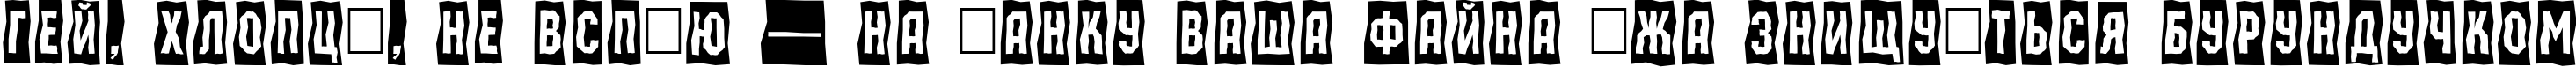 Пример написания шрифтом a_MachinaOrtoSls текста на украинском